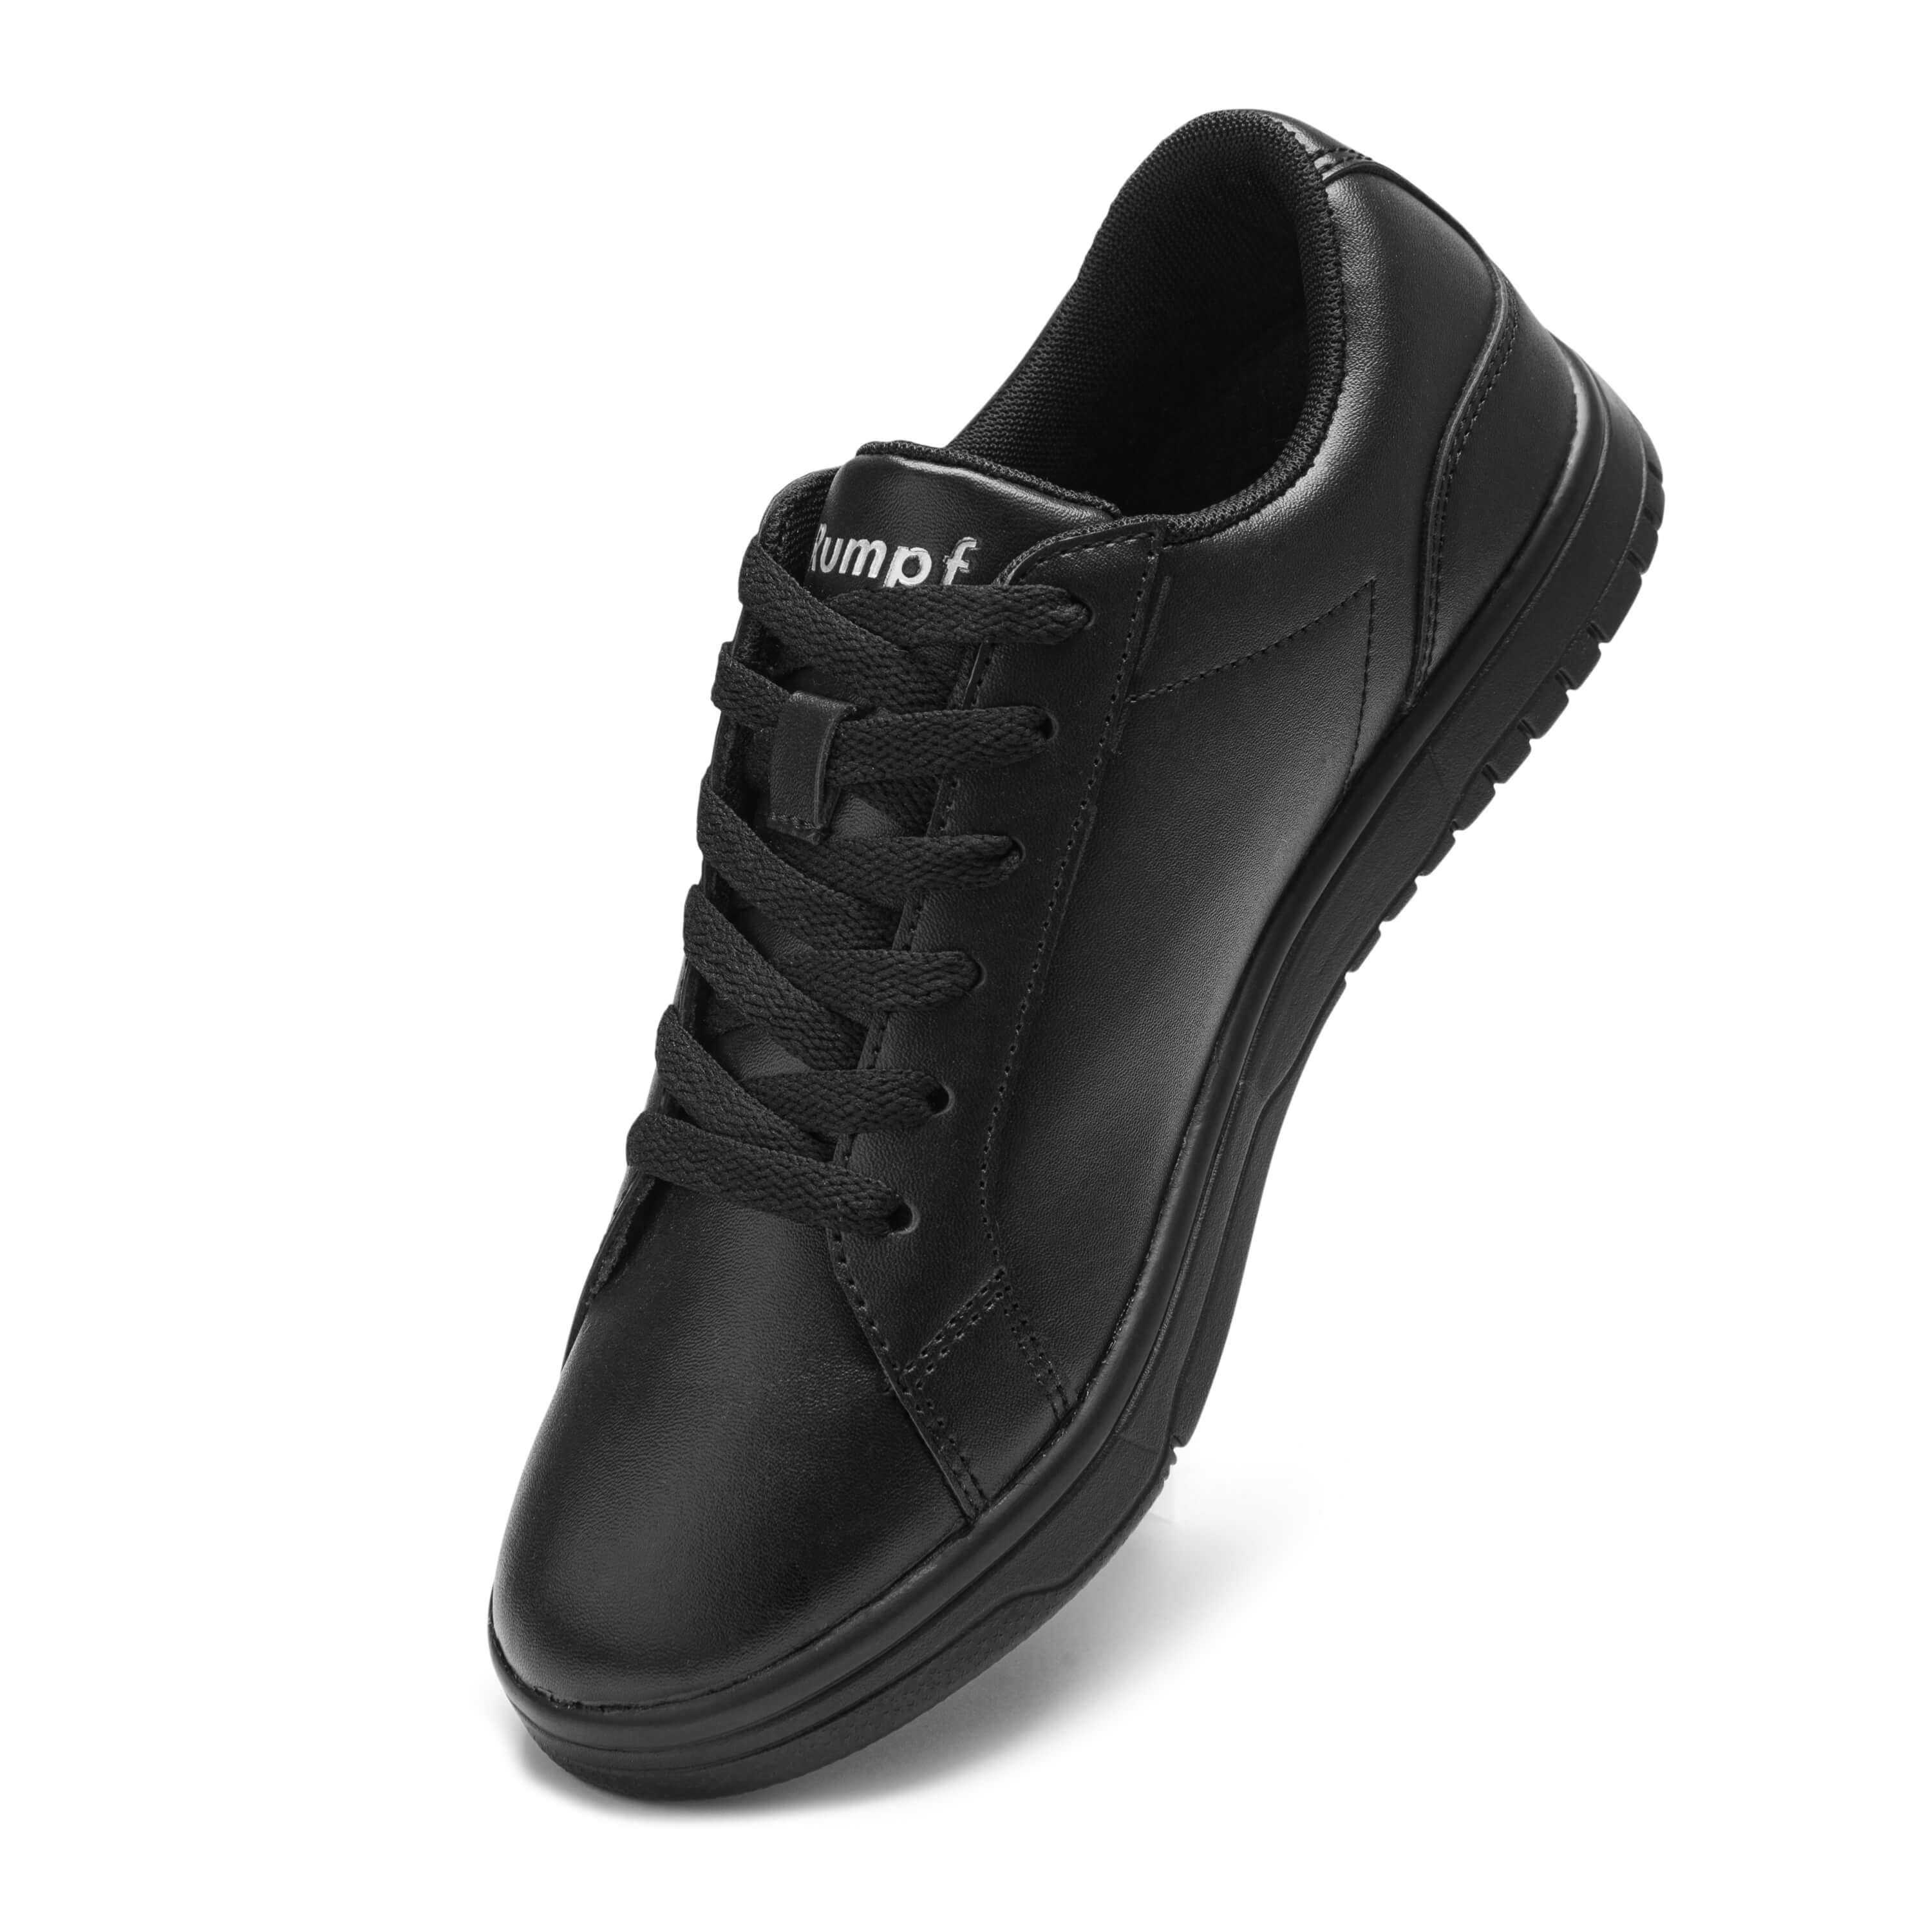 1533 La Dance sneaker in black